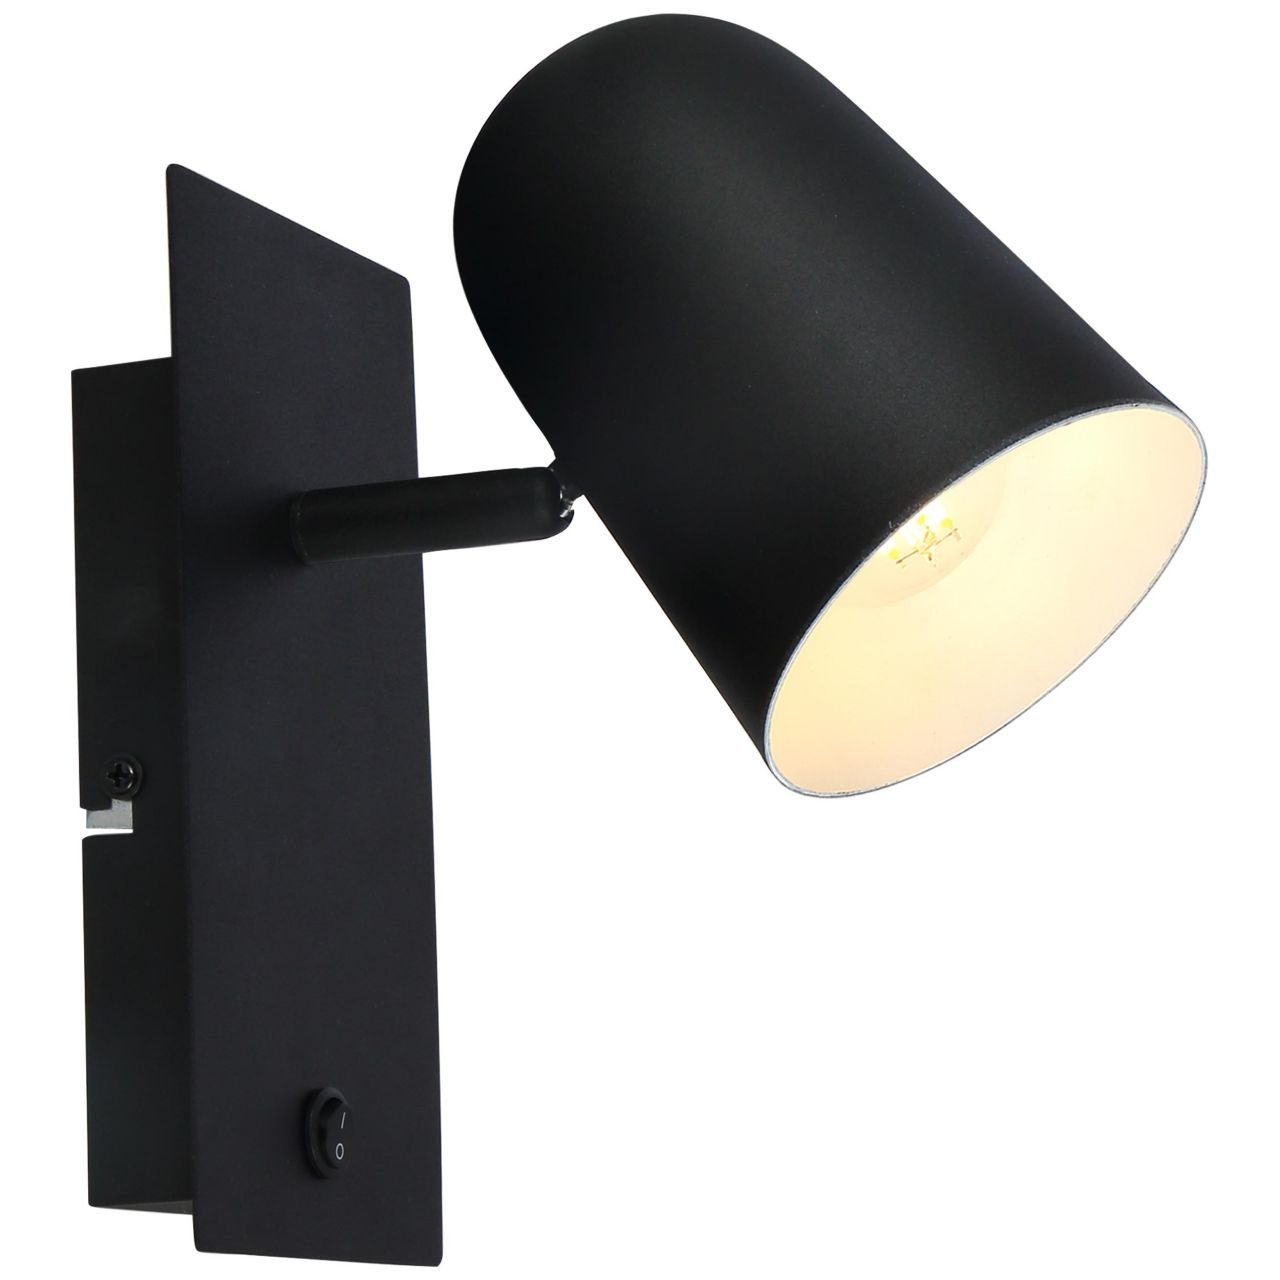 Brilliant Wandleuchte Ayr, Lampe Ayr Wandspot Schalter schwarz matt 1x D45, E14, 18W, geeignet